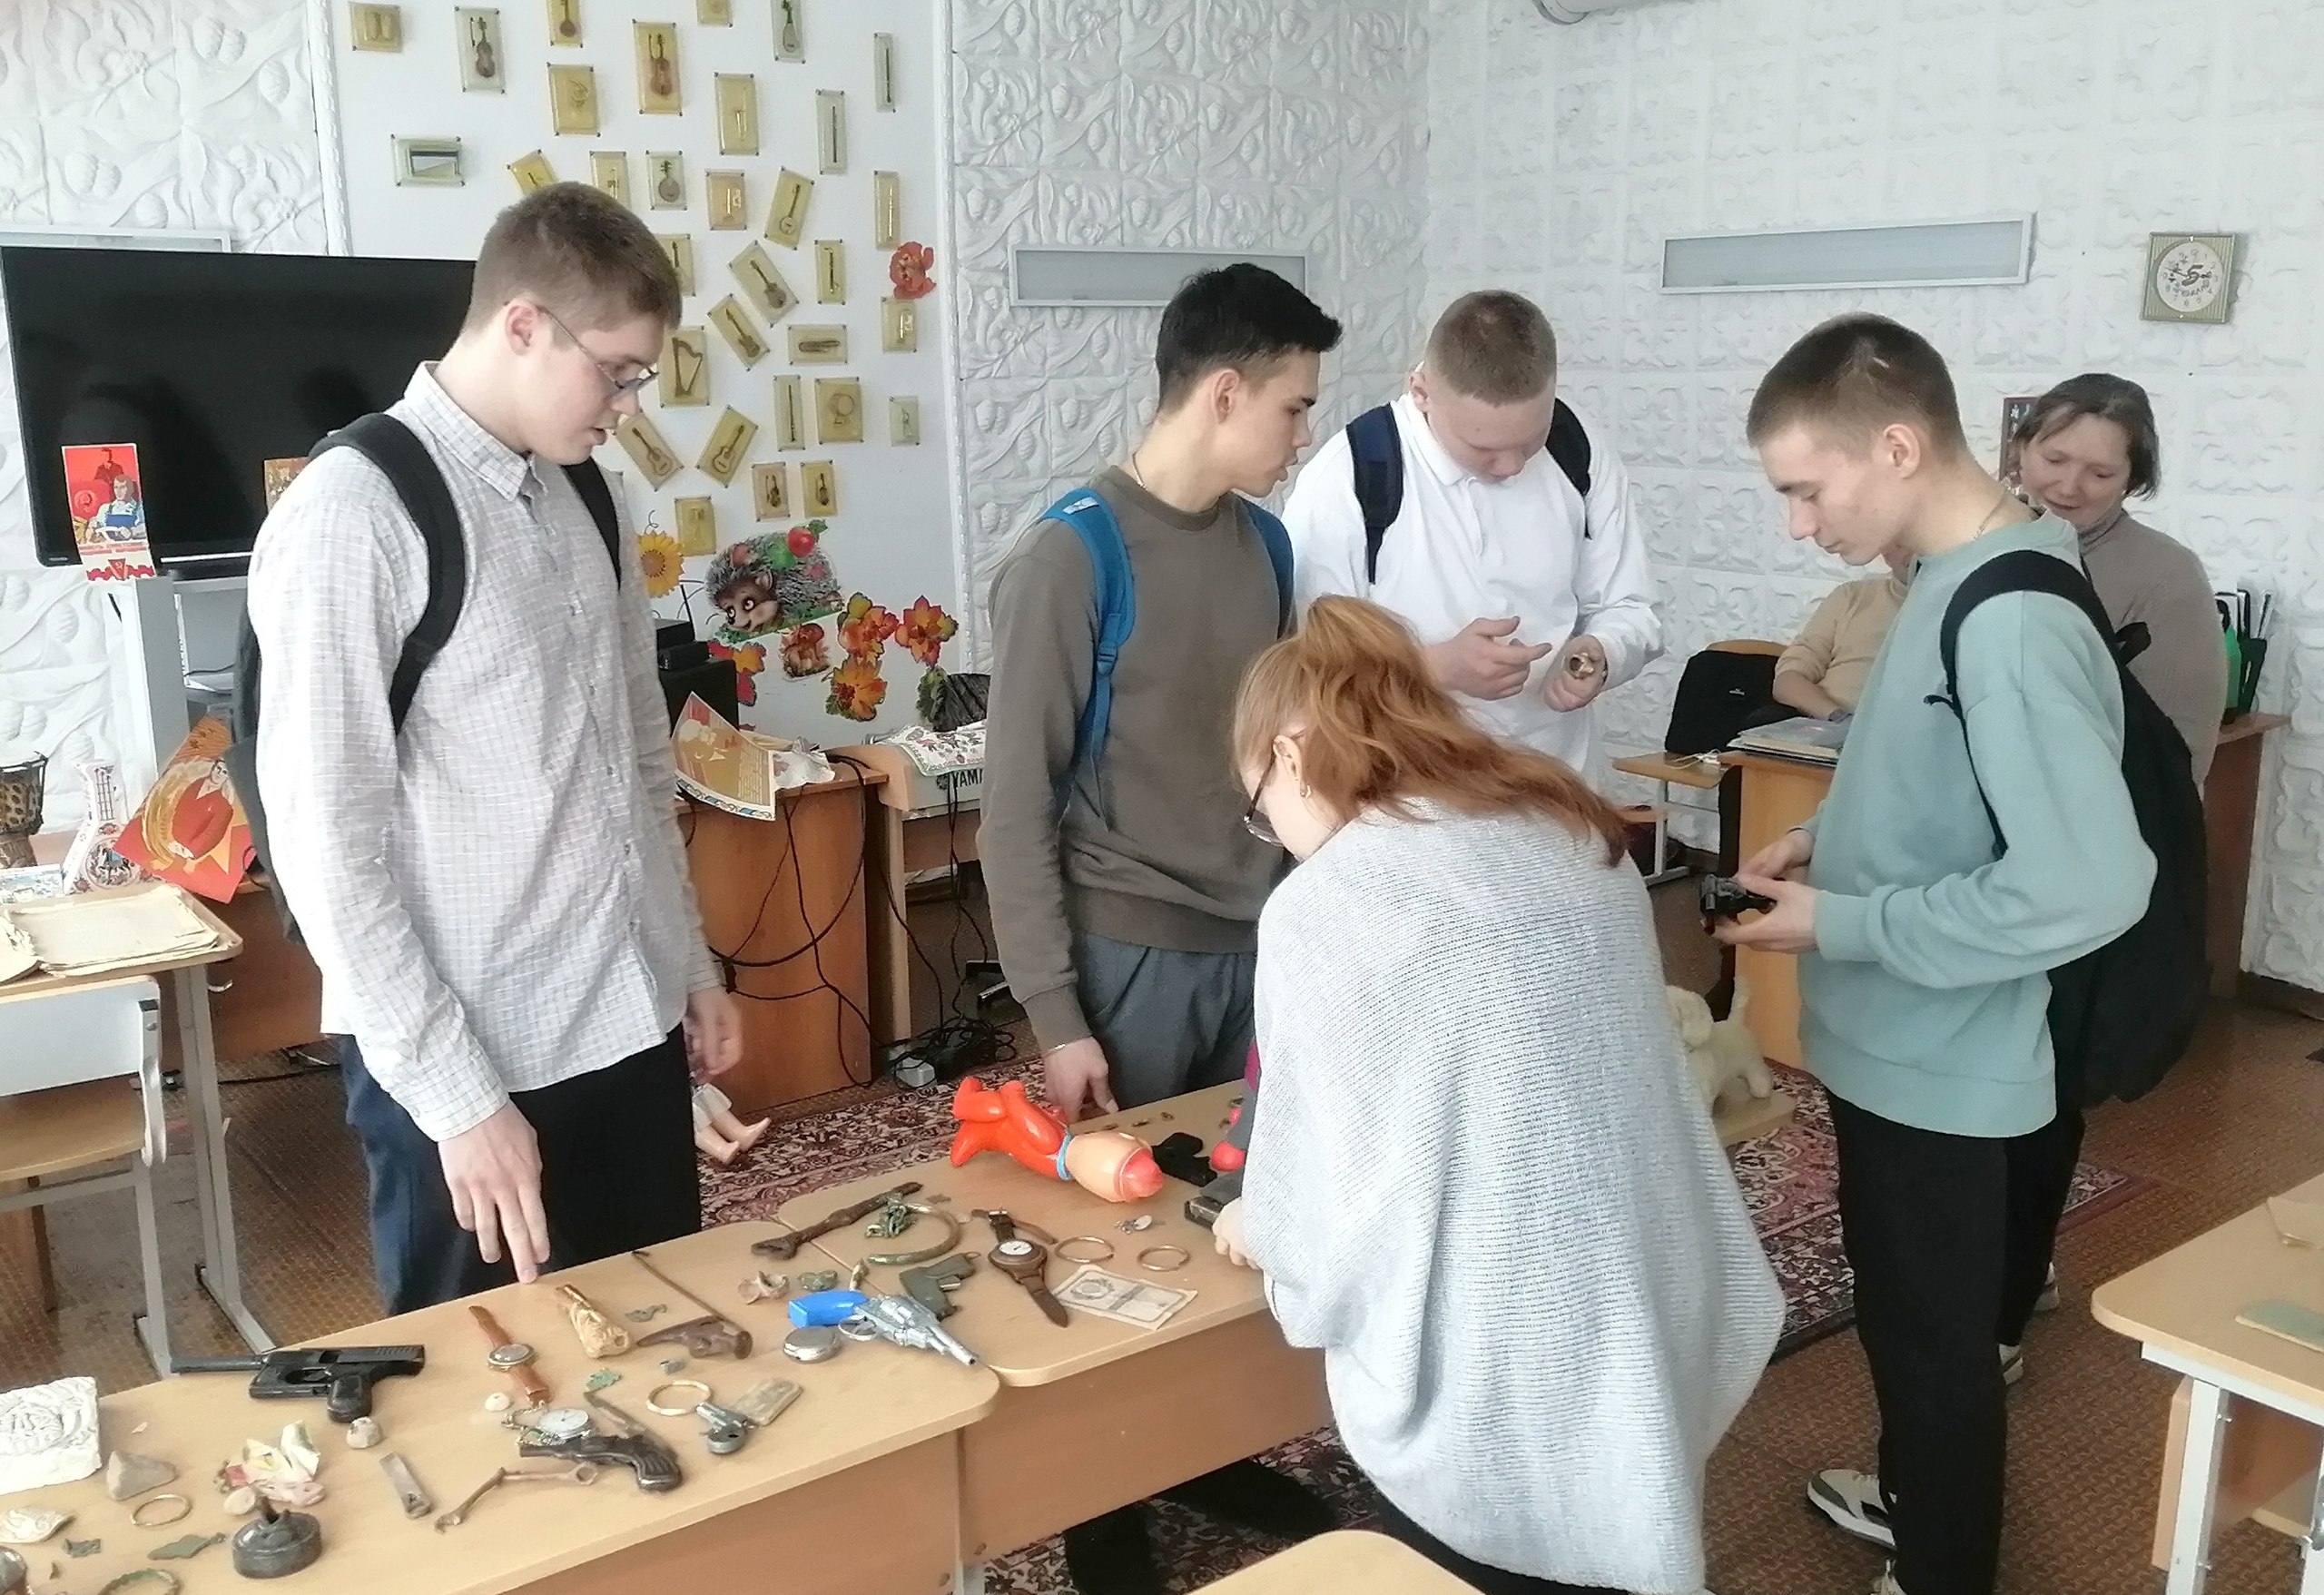 Некоторые экспонаты вызывали у учащихся Нижнетуринской гимназии множество вопросов, на которые Вячеслав Крутихин обстоятельно ответил, рассказав истории вещей